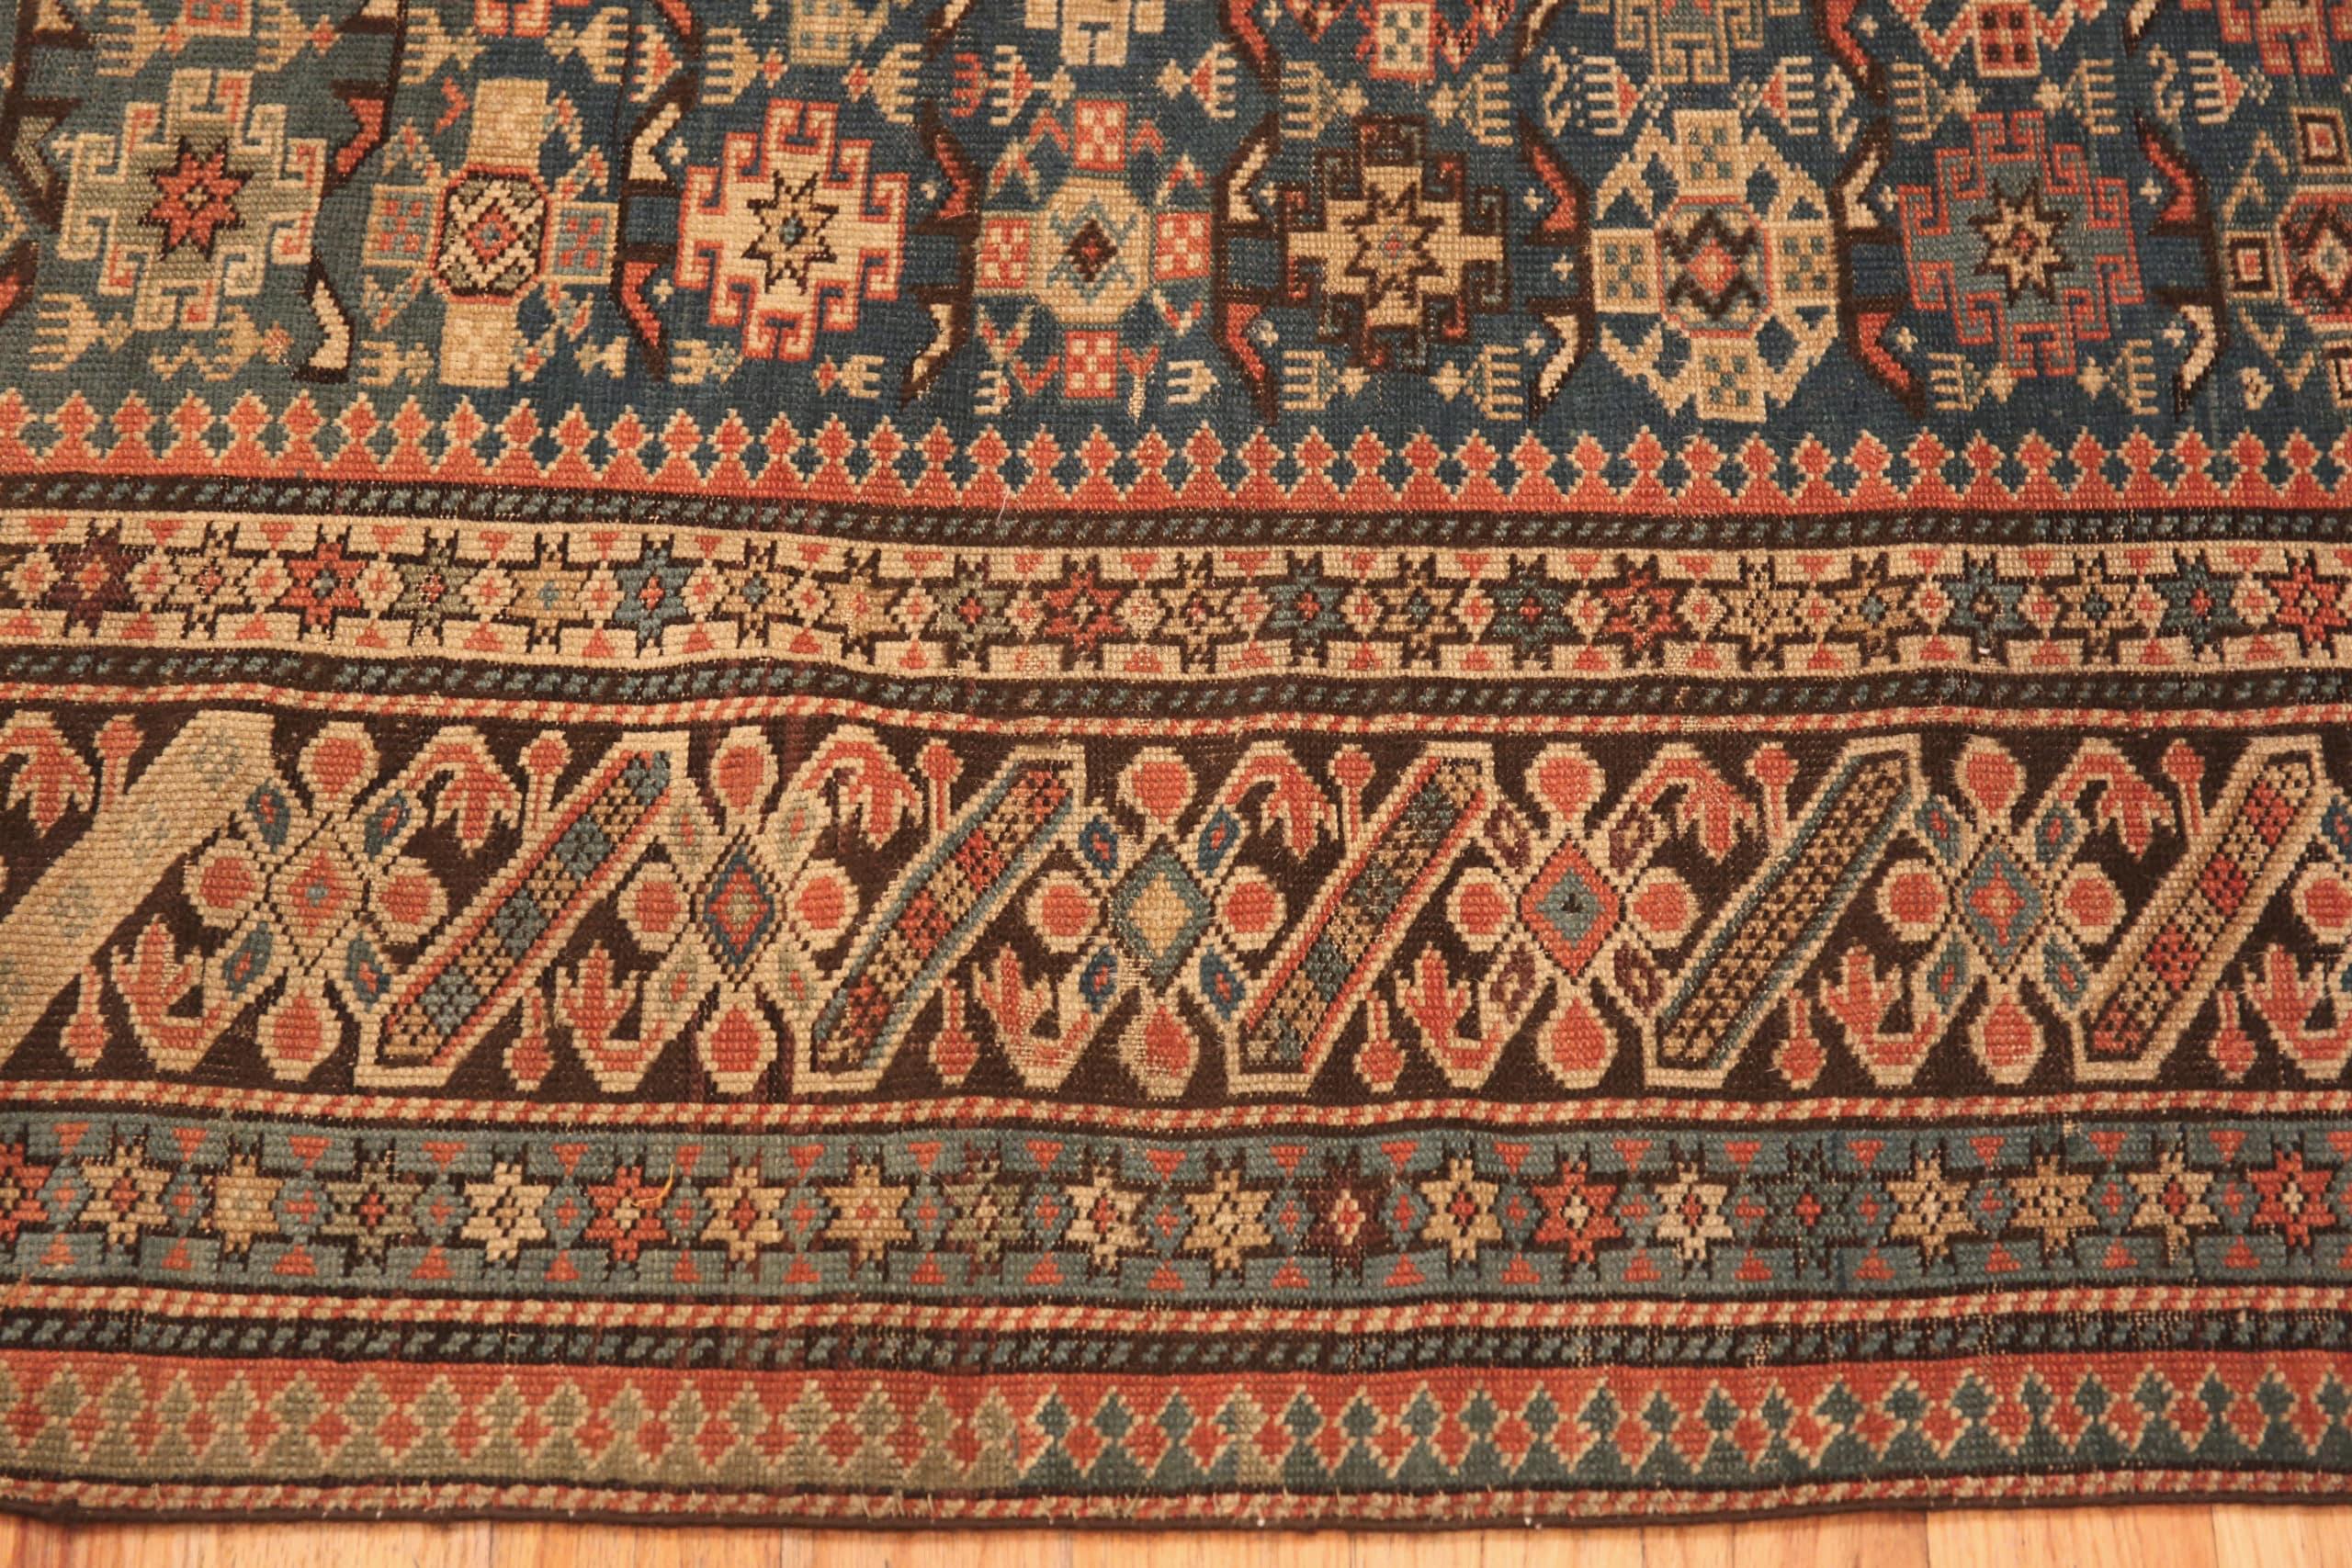 Antique Caucasian Chi Chi Rug, Country Of Origin: Caucasus, Circa date: 1900. Size: 4 ft x 5 ft 1 in (1.22 m x 1.55 m)